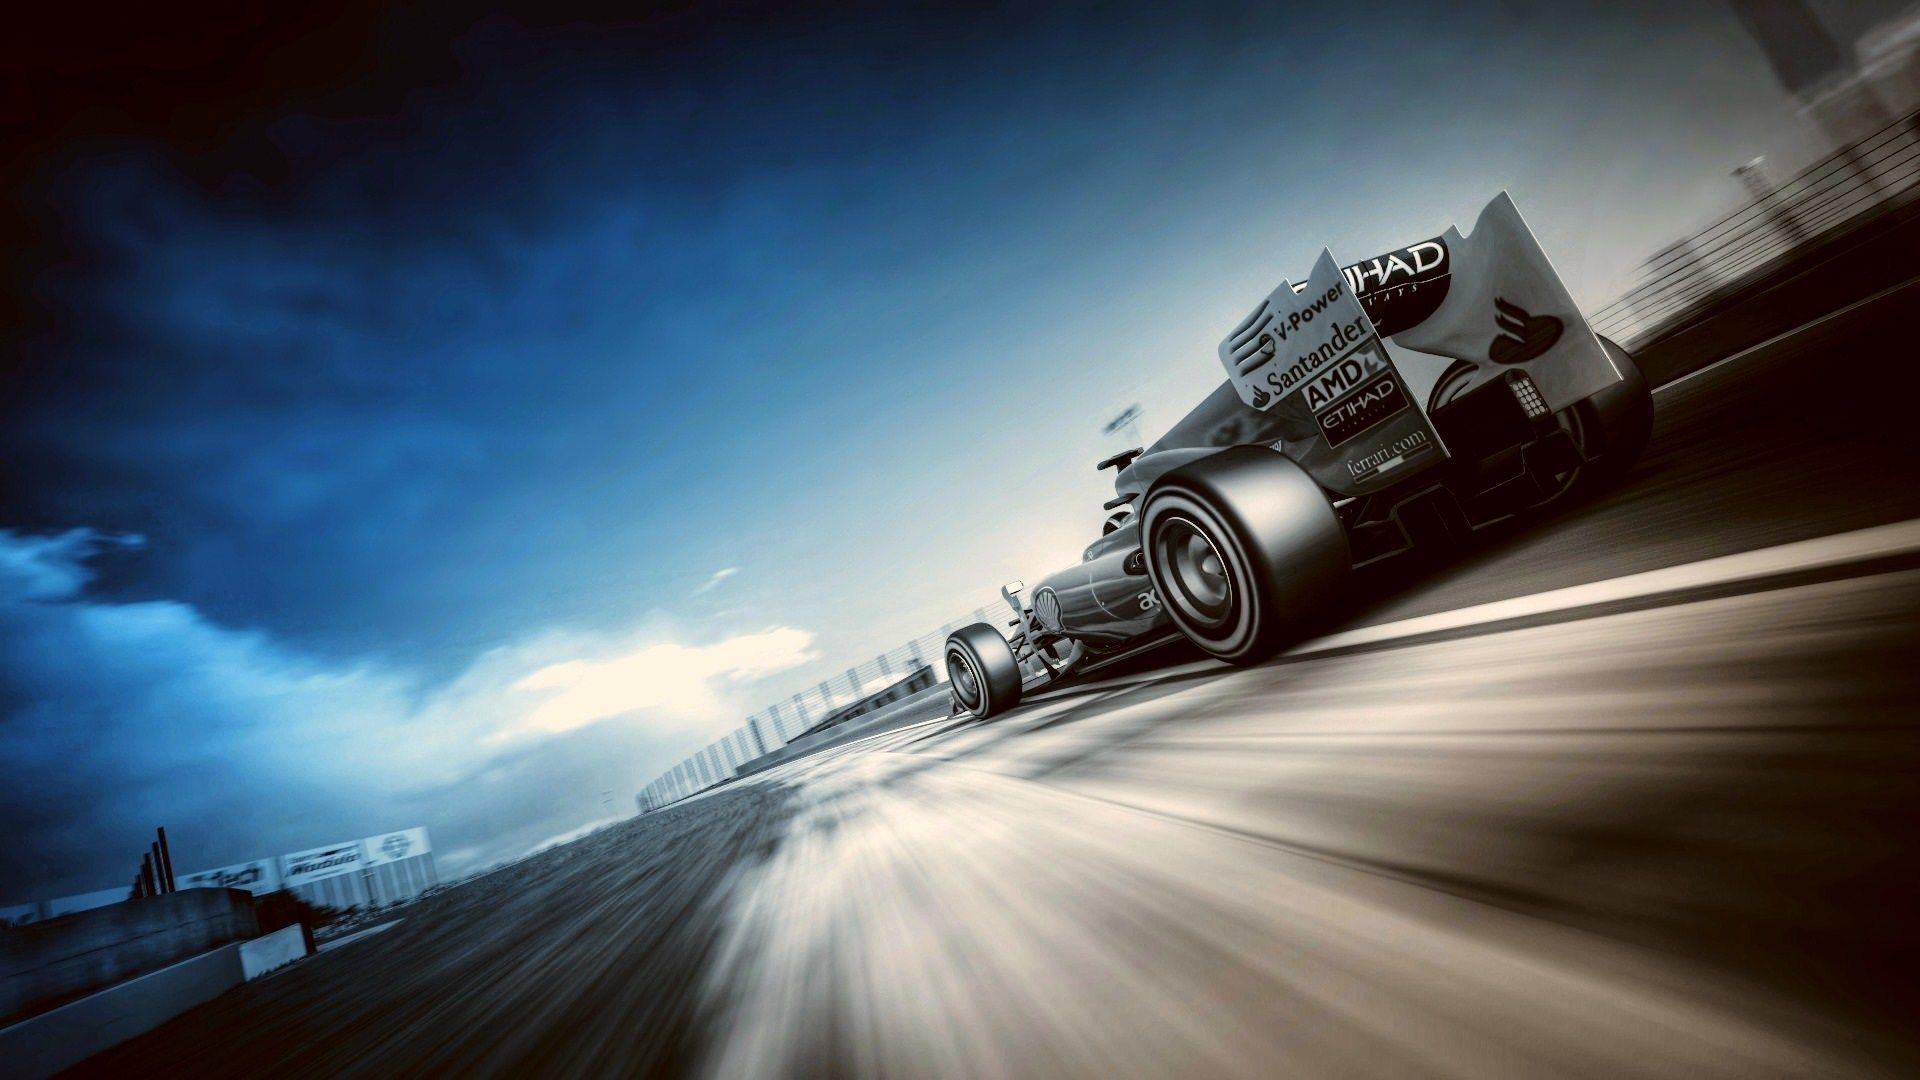 Formula 1 Cars Wallpaper Cool Image #w39i10.com